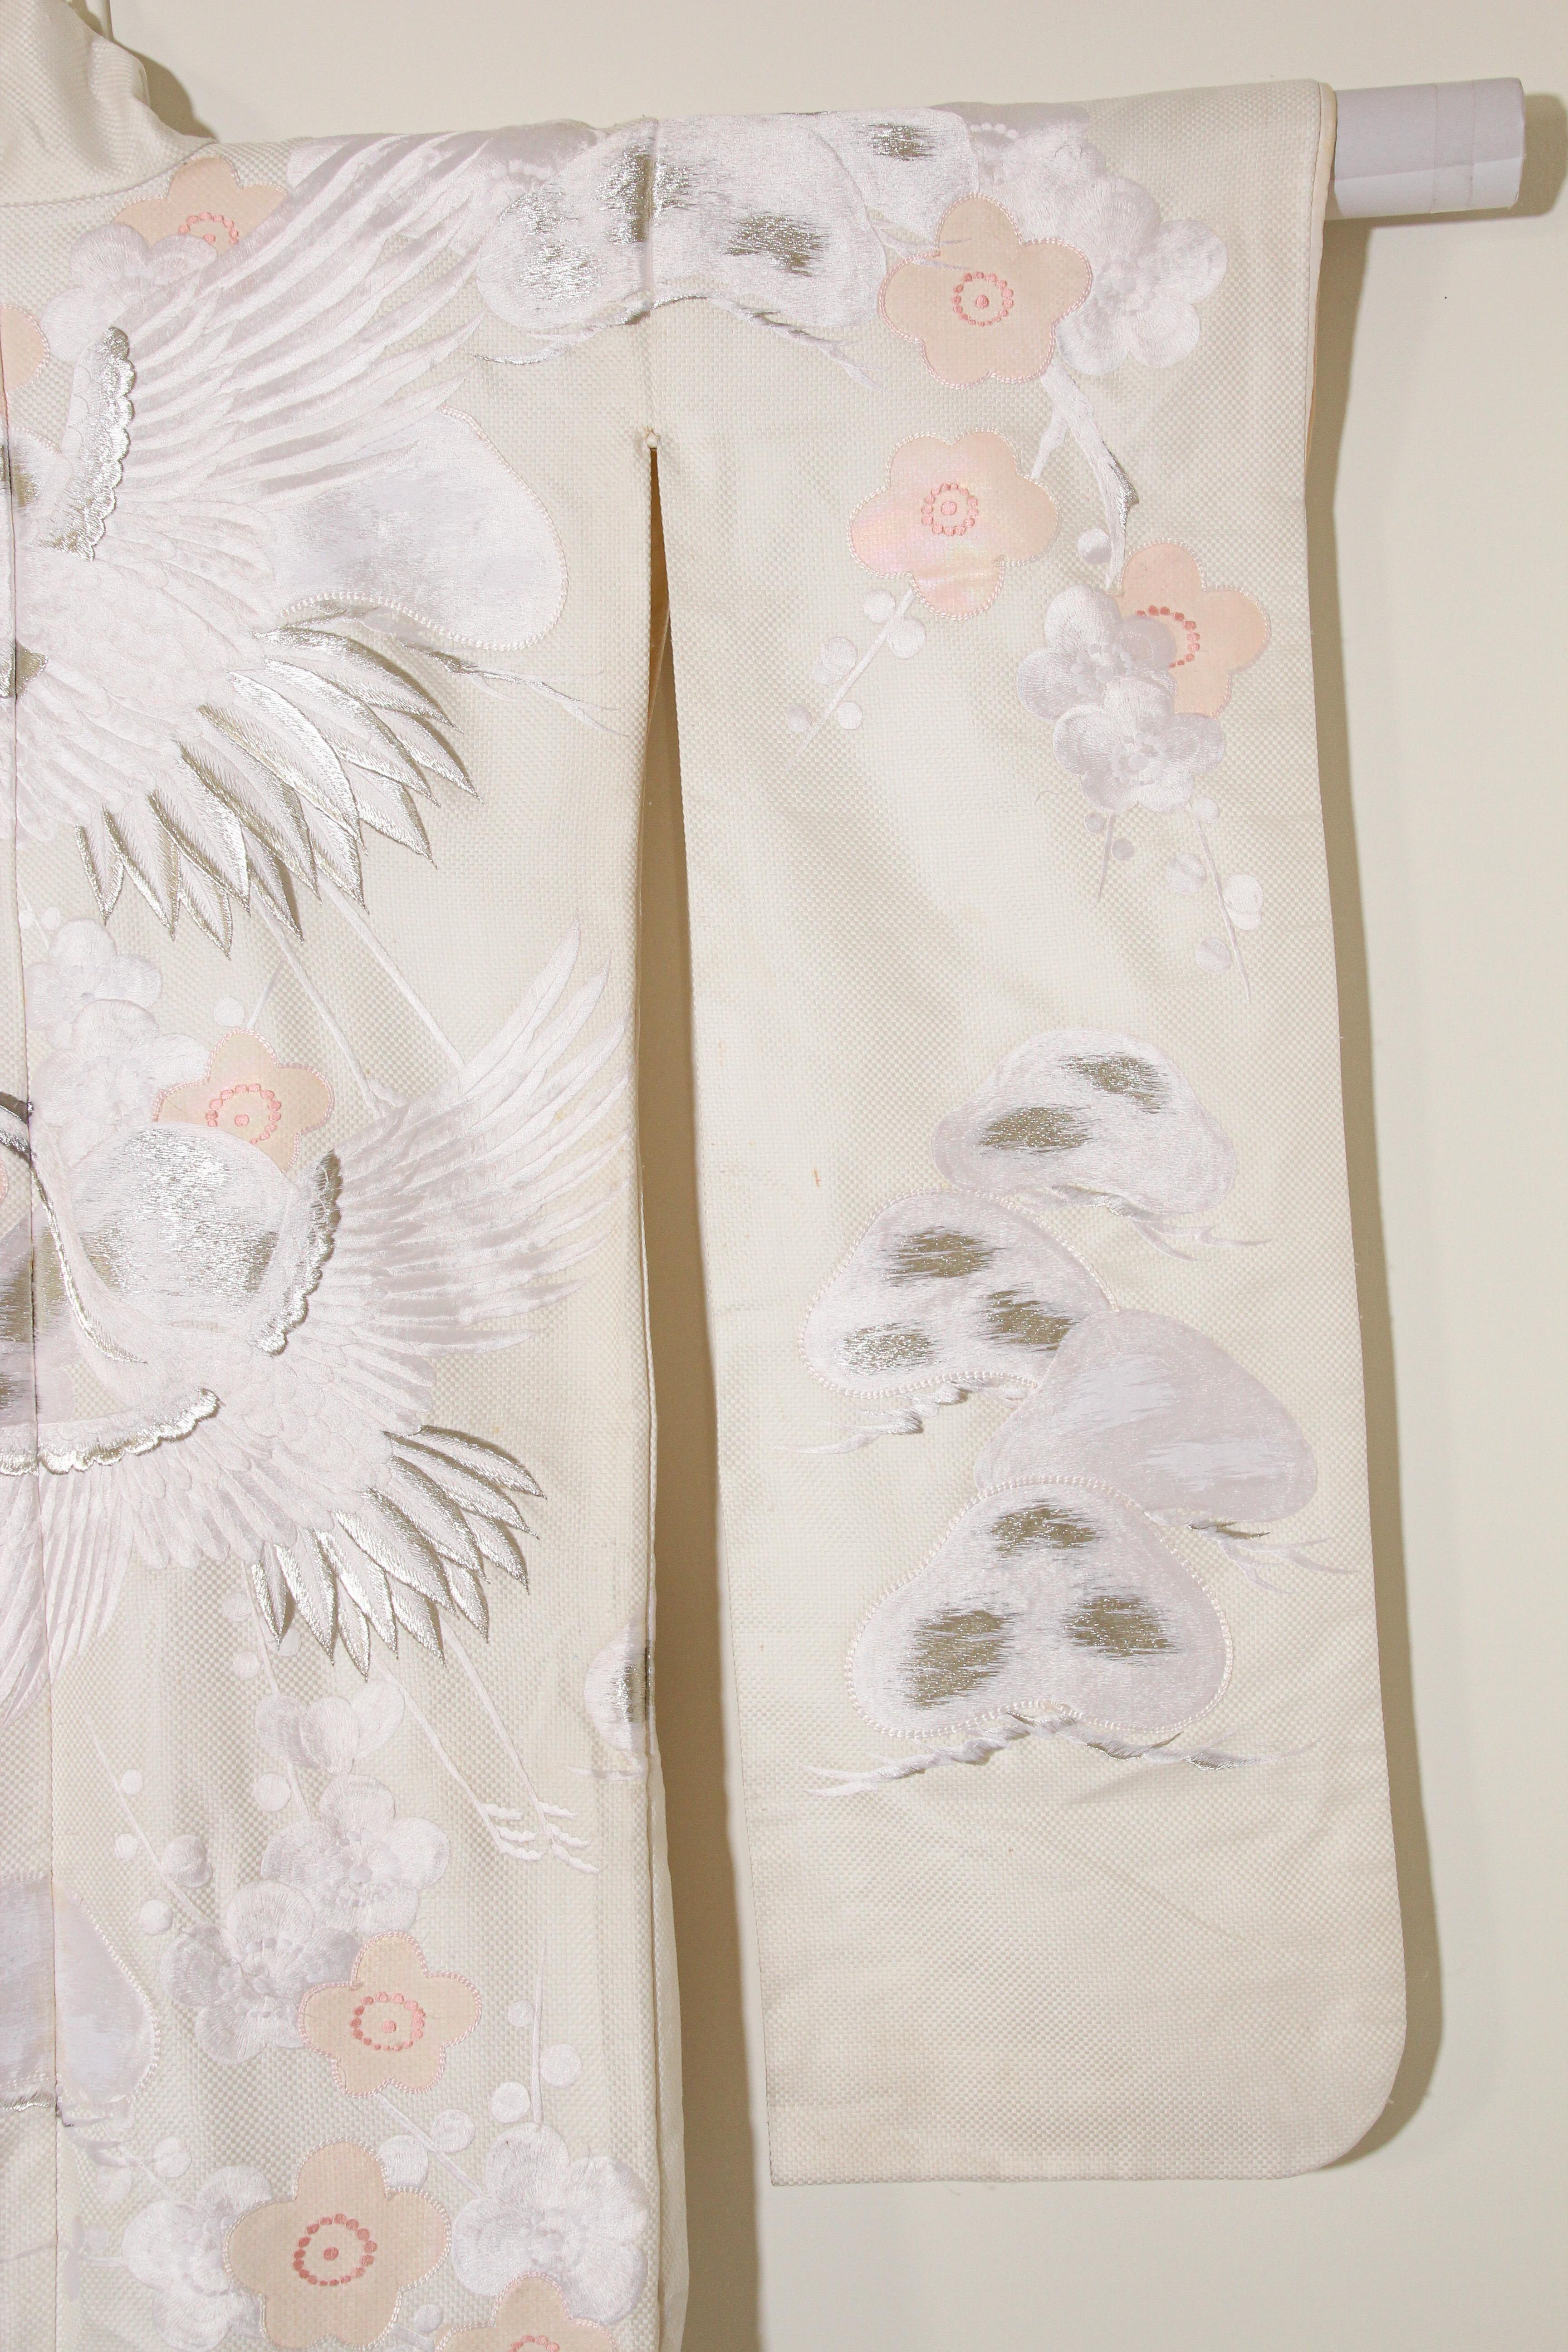 Vintage Collectable Japanese White Silk Ceremonial Wedding Kimono 2